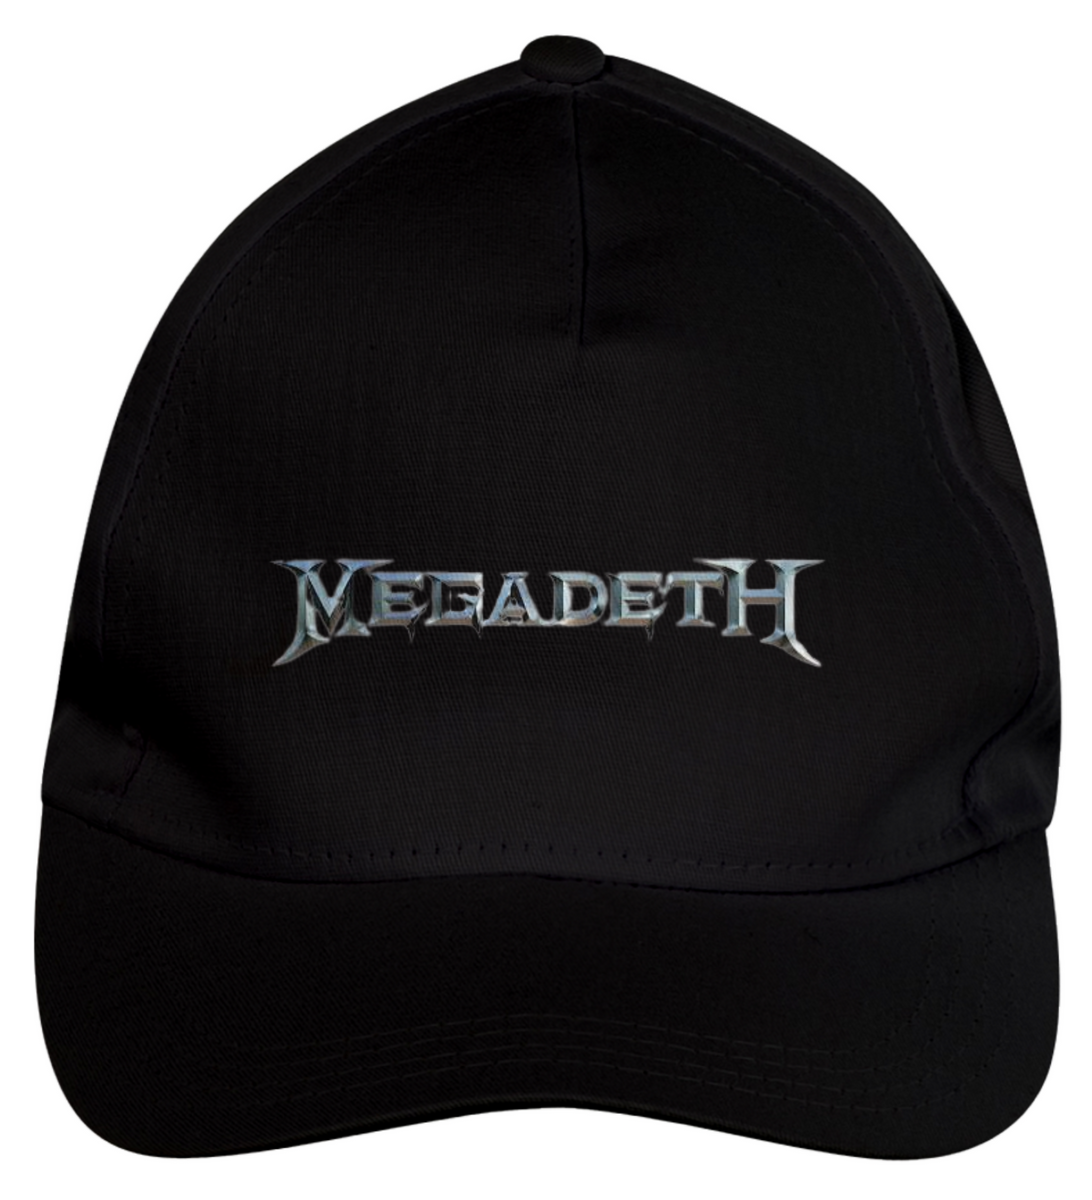 Nome do produto: Megadeth